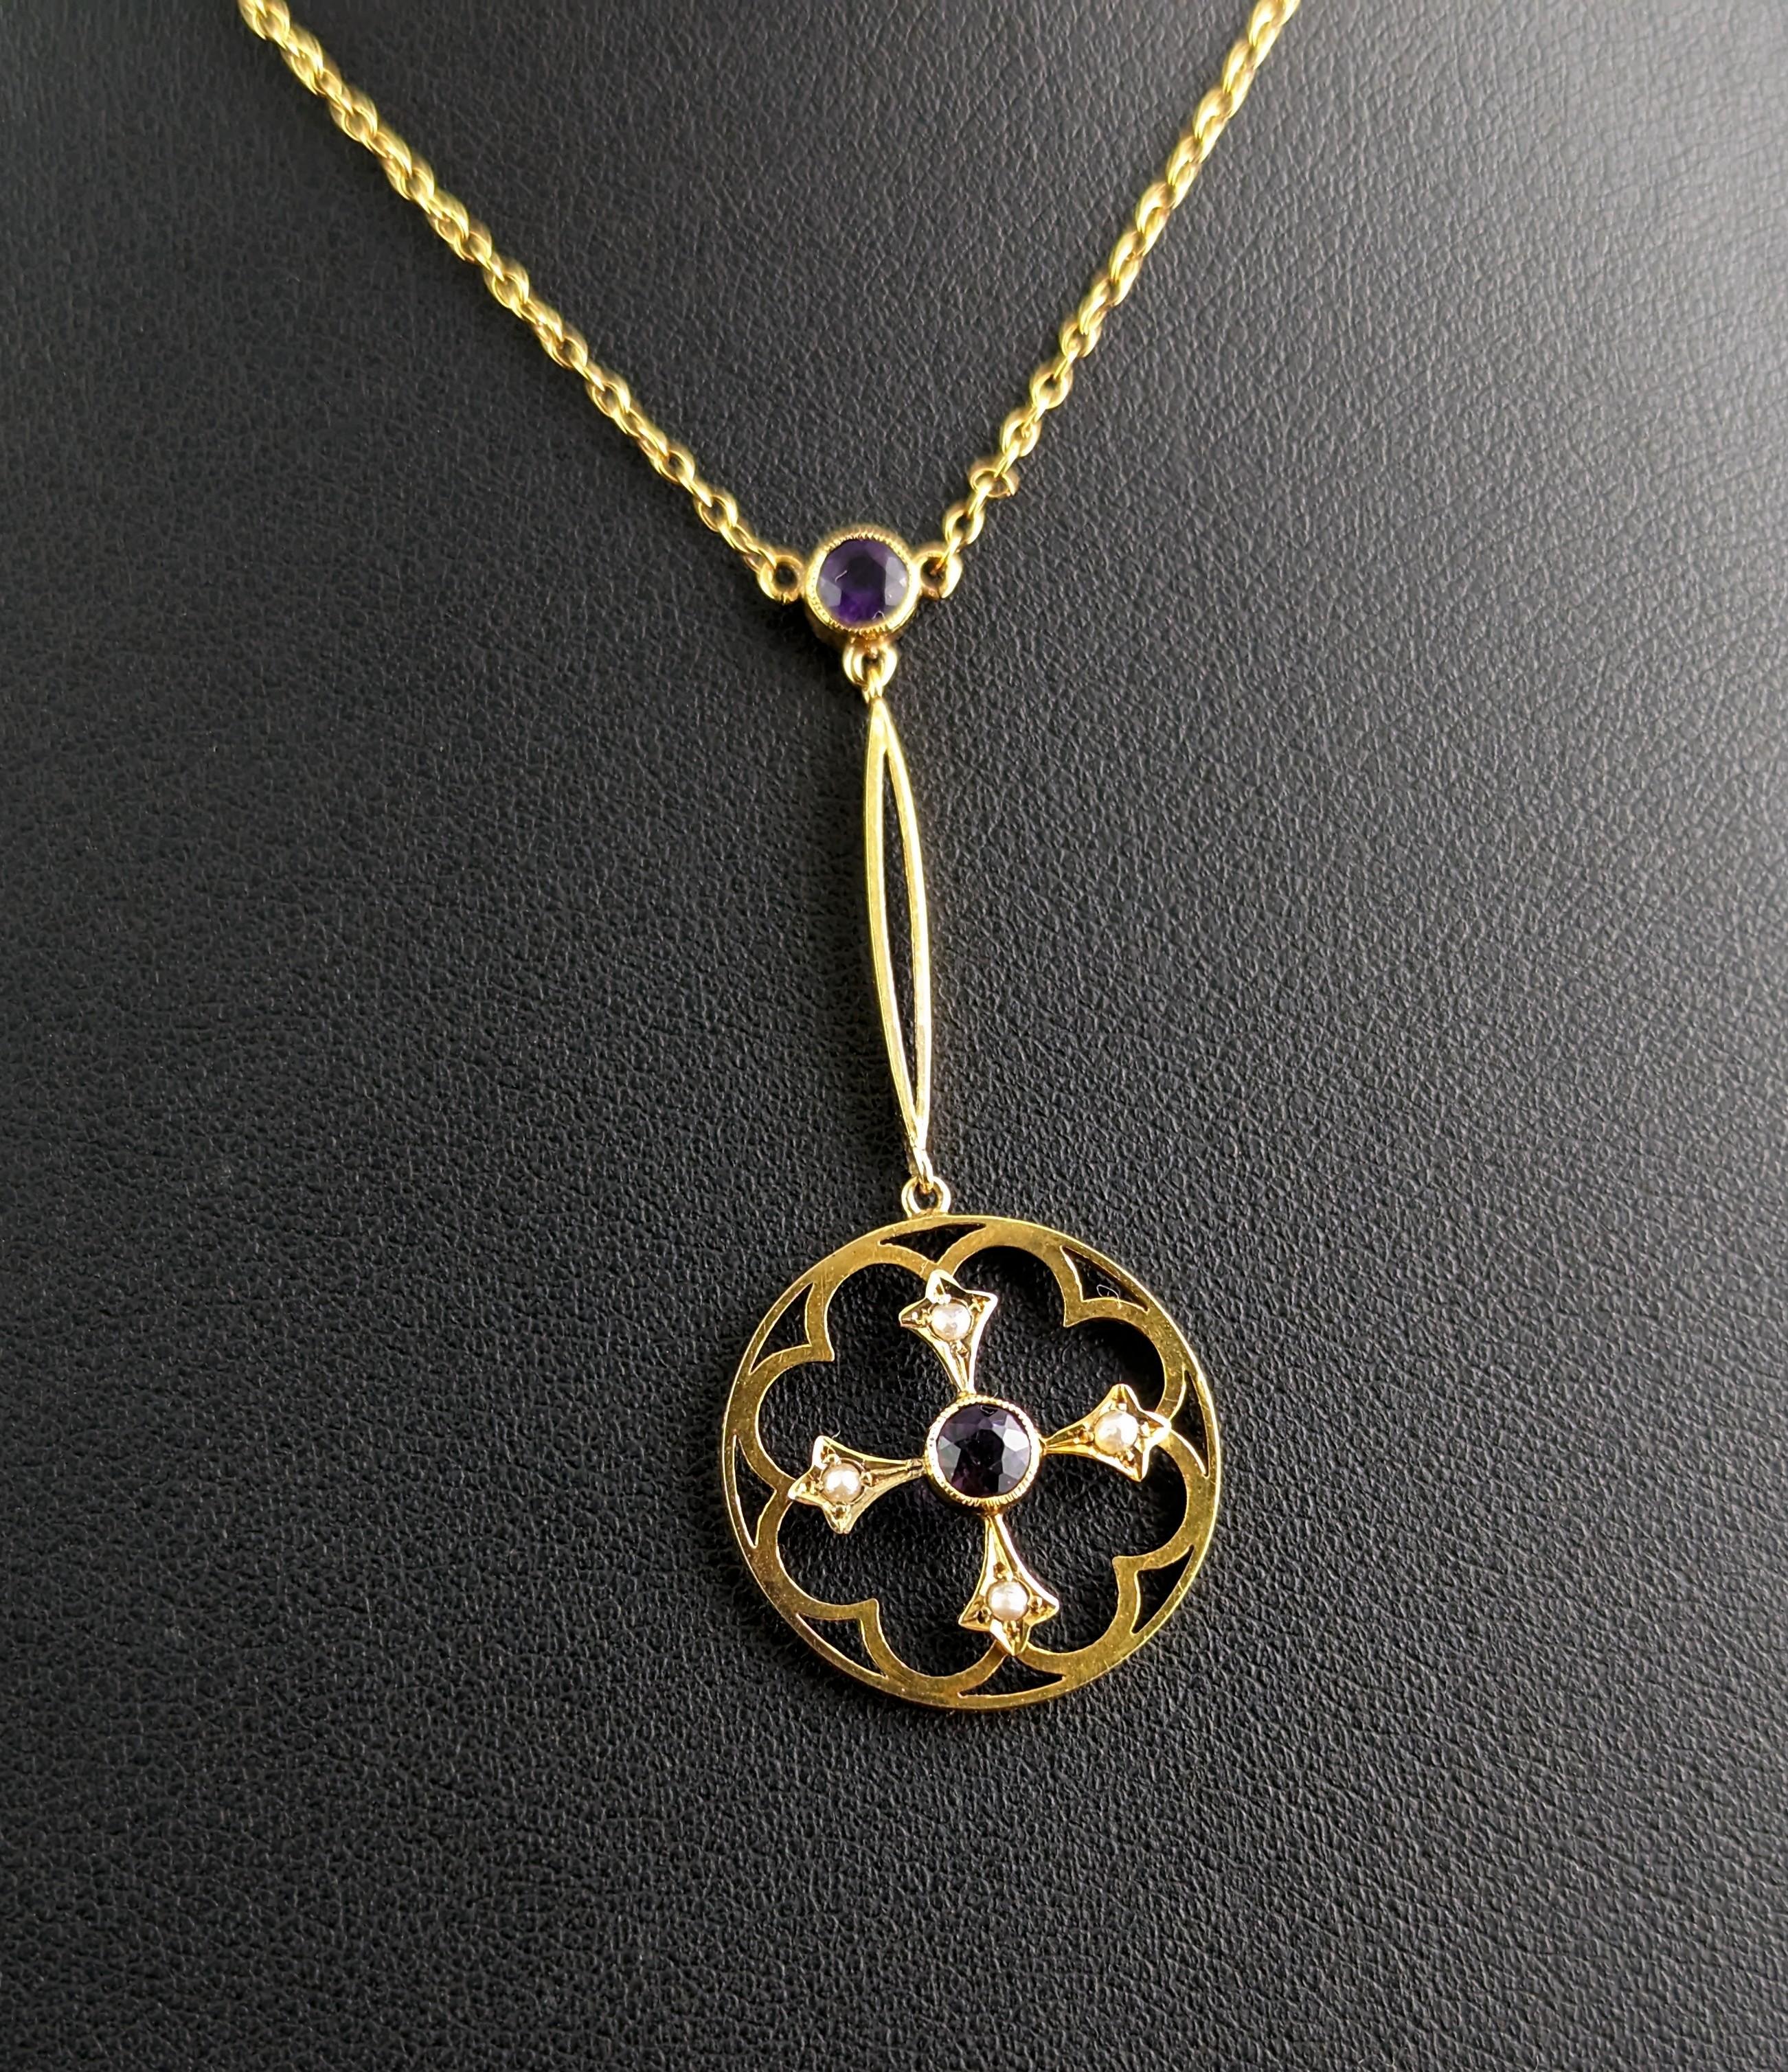 Antique Art Nouveau Pendant Necklace, Amethyst and Pearl, 9 Karat Gold  For Sale 4